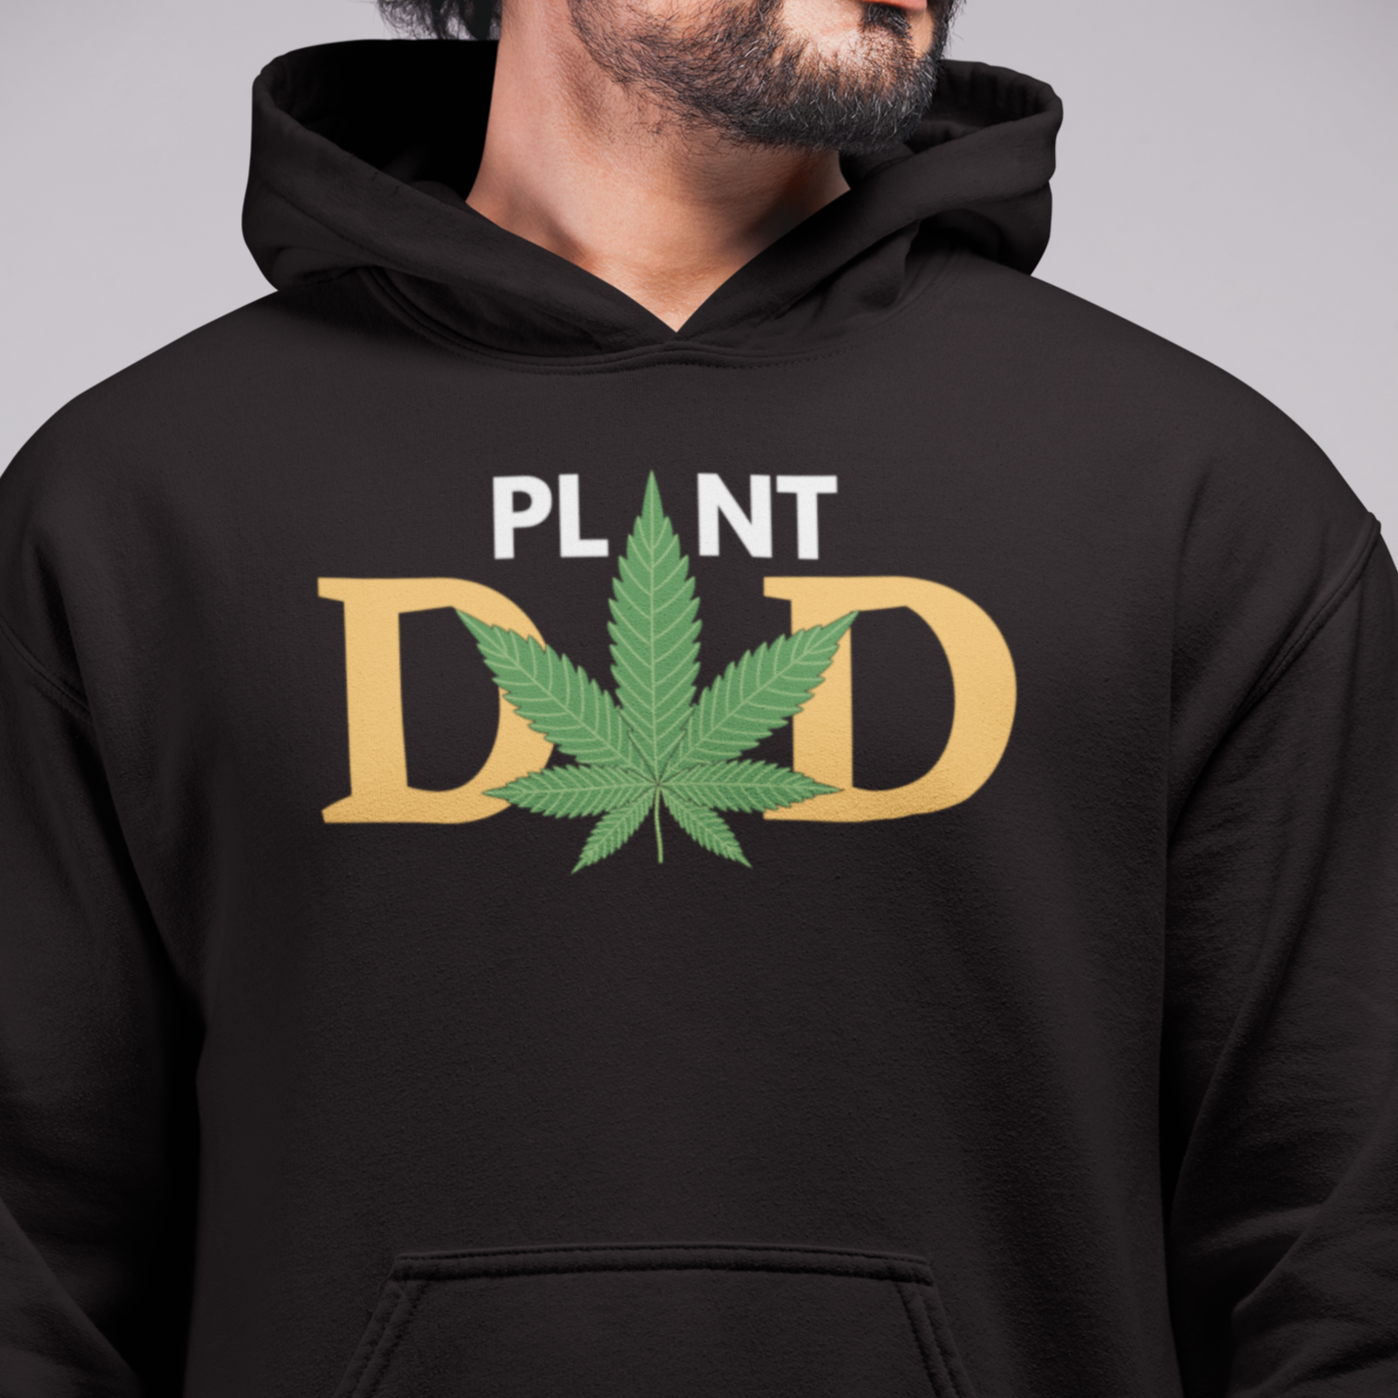 Plant Dad Premium Men's Hoodie